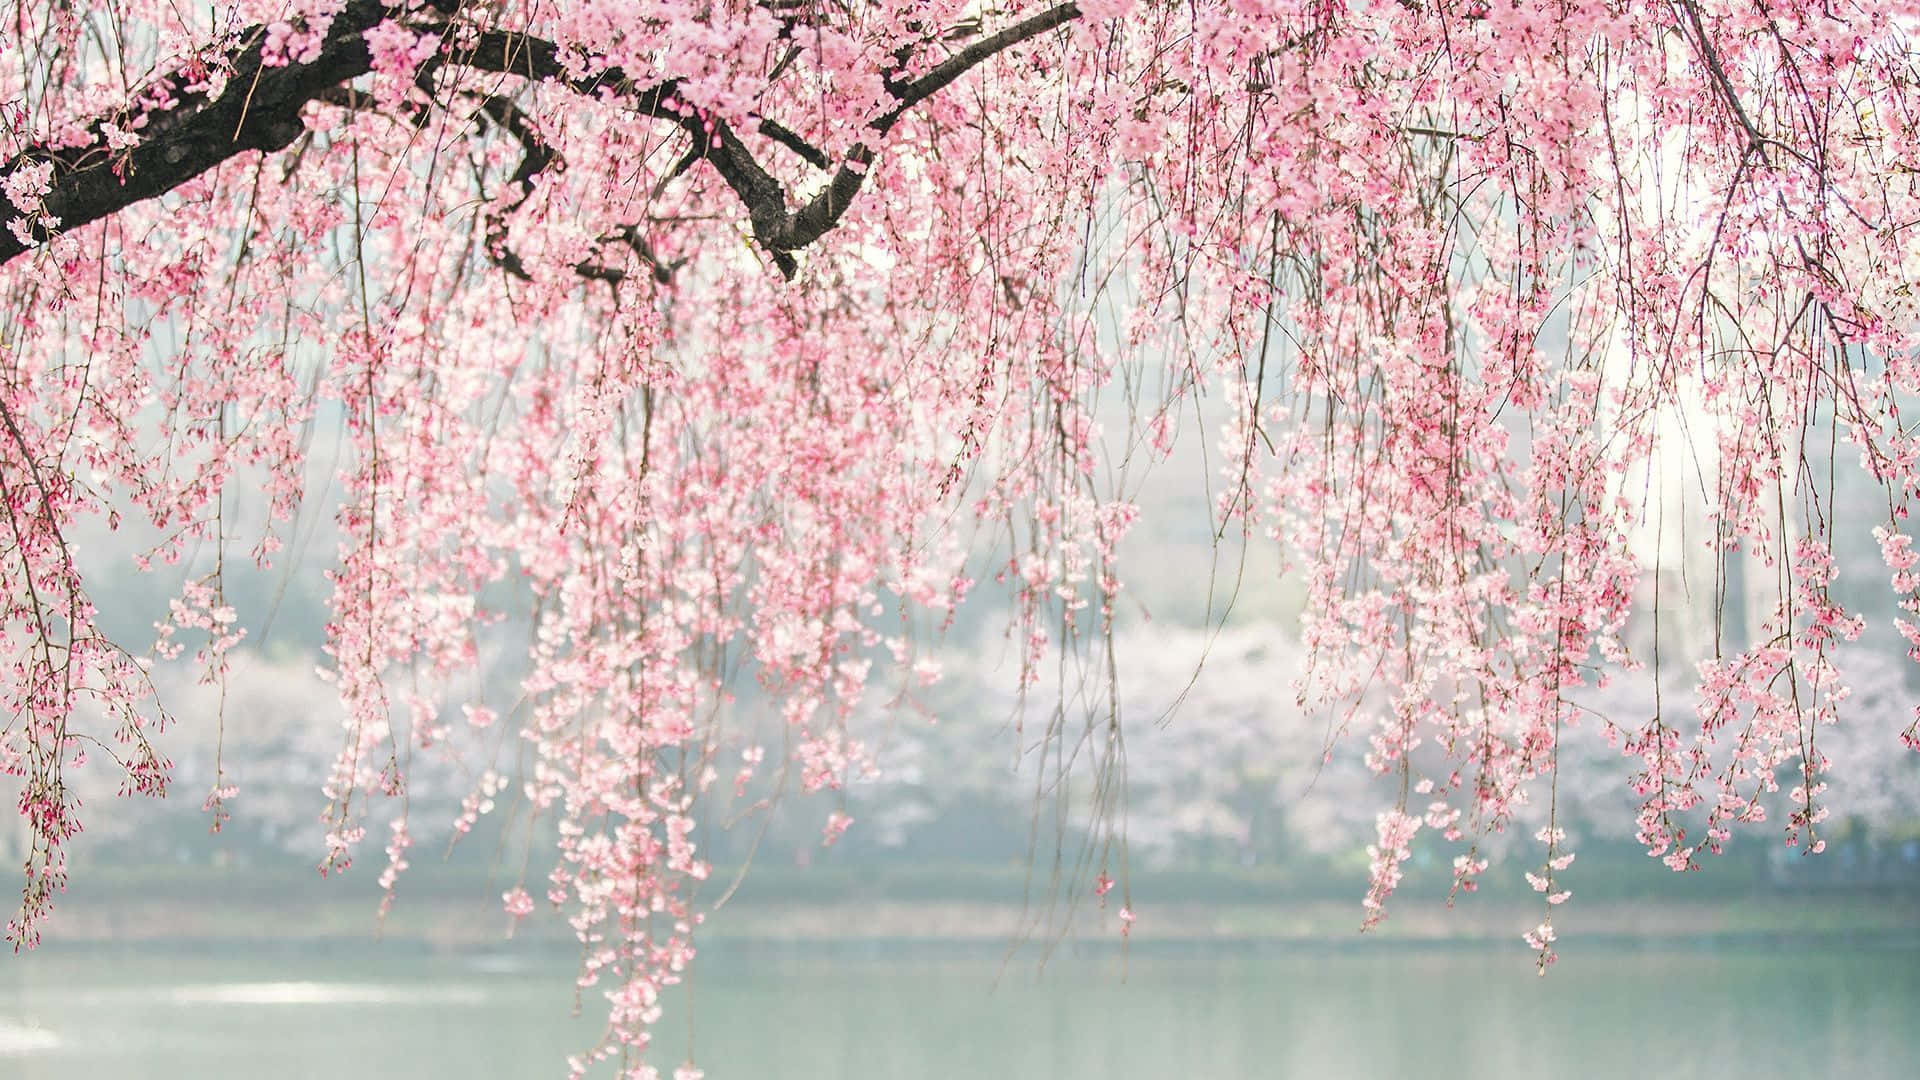 A serene spring evening in a park full of sakura trees.